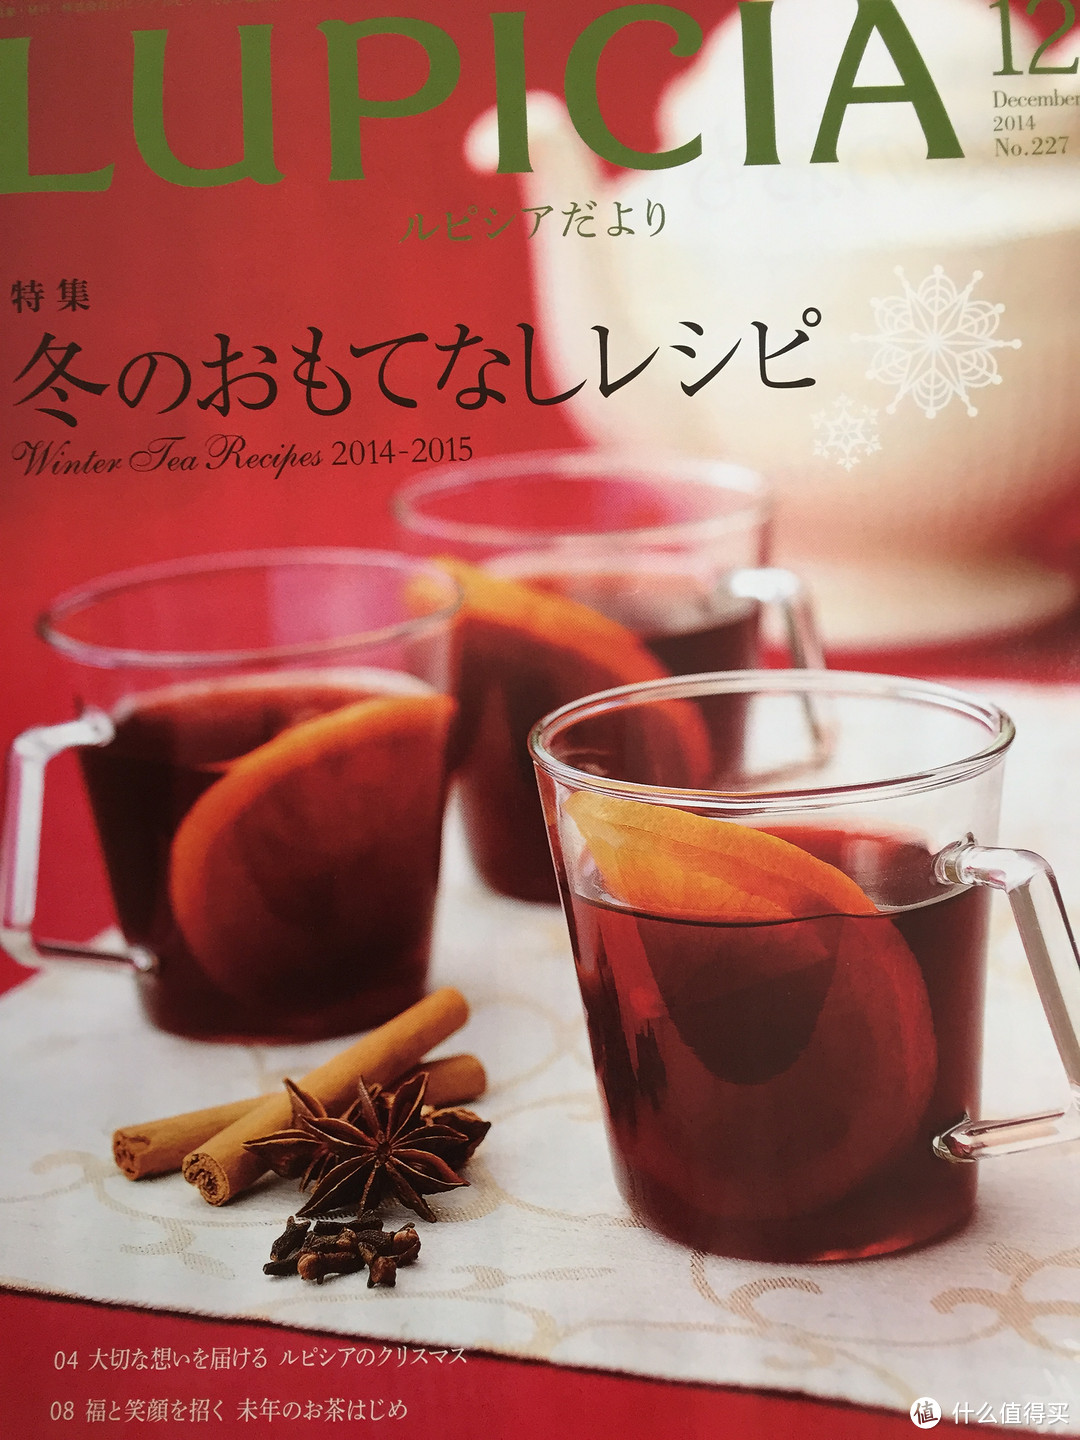 温暖的冬季，从一杯热茶开始：LUPICIA 茶品